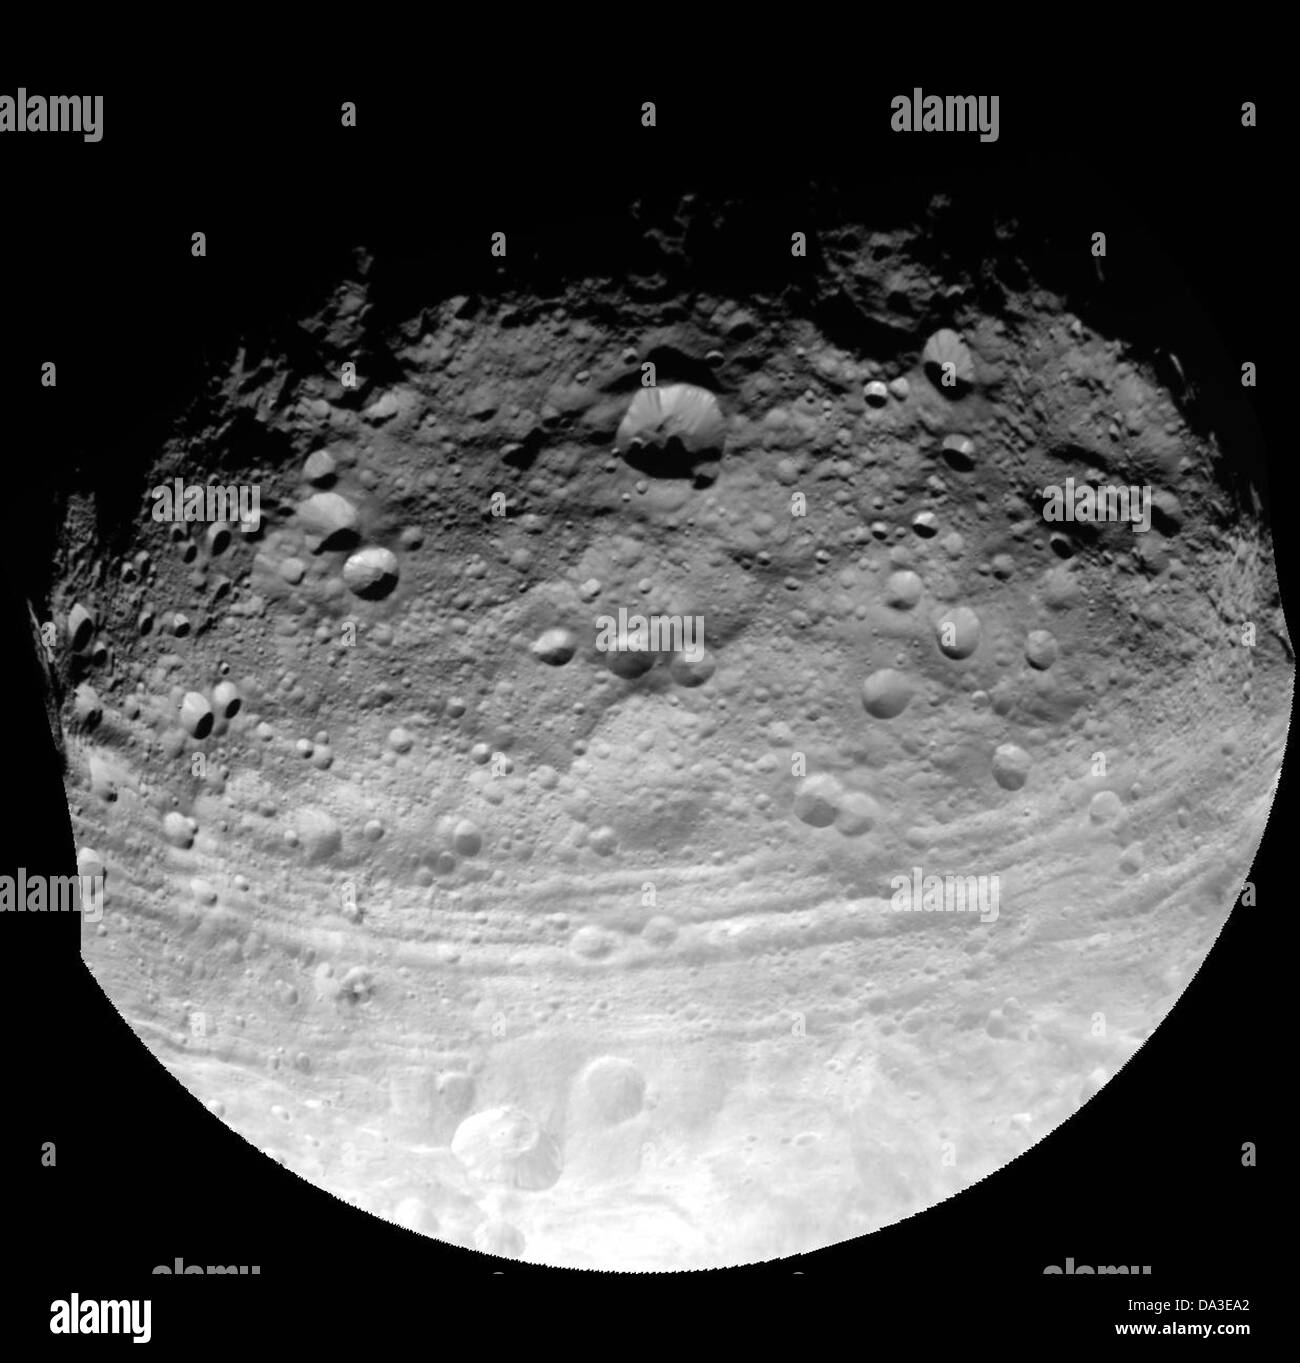 Raum Asteroiden Vesta aufgenommen durch die Raumsonde Dawn zeigt Einschlagskrater in verschiedenen Größen und Tröge parallel zum Äquator Stockfoto